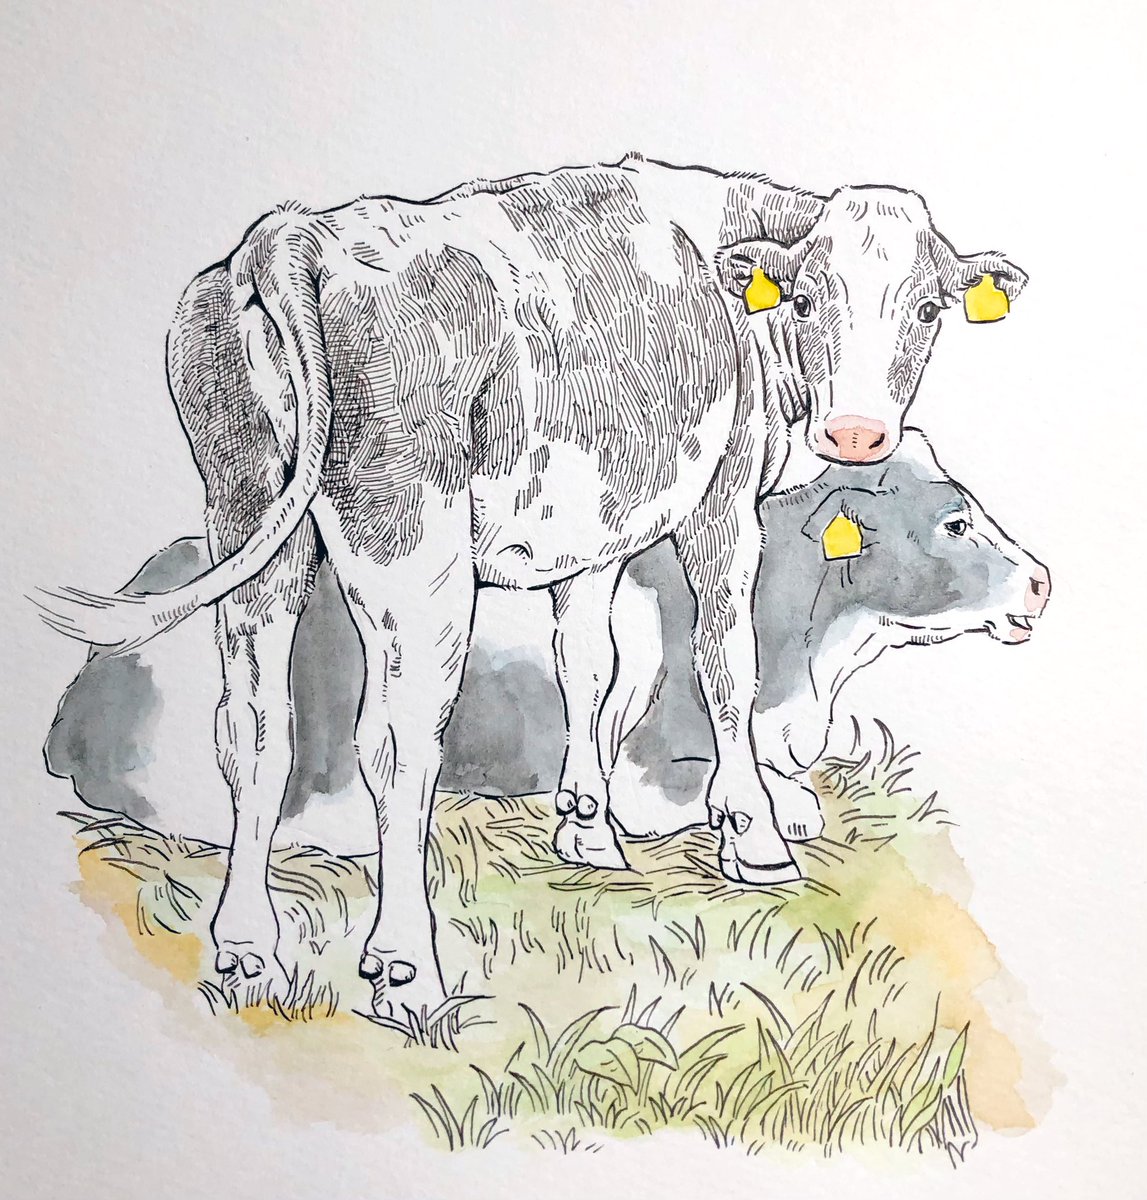 ポケモン「ポケモンについてあれこれと呟きましたが、普段牛ばかり描いてるアカウントです。これ」|牛川いぬお@書籍発売中のイラスト